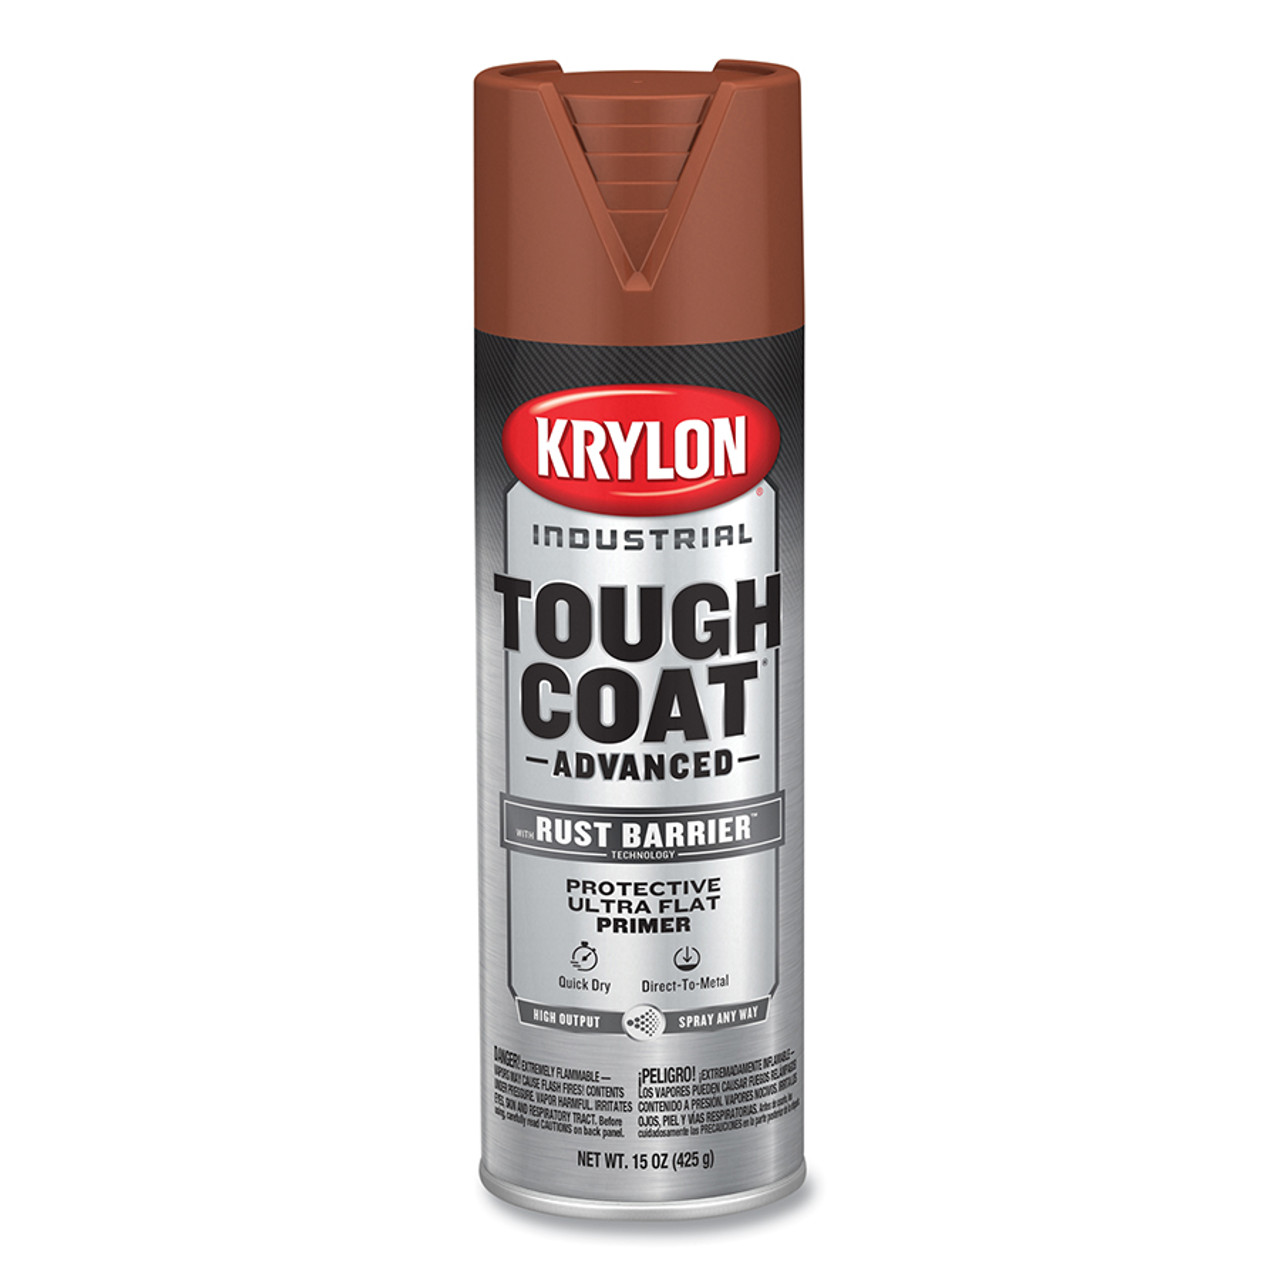 Krylon Vintage Finish Spray Paint Kit, Burnt Wood, 2-11.5 oz